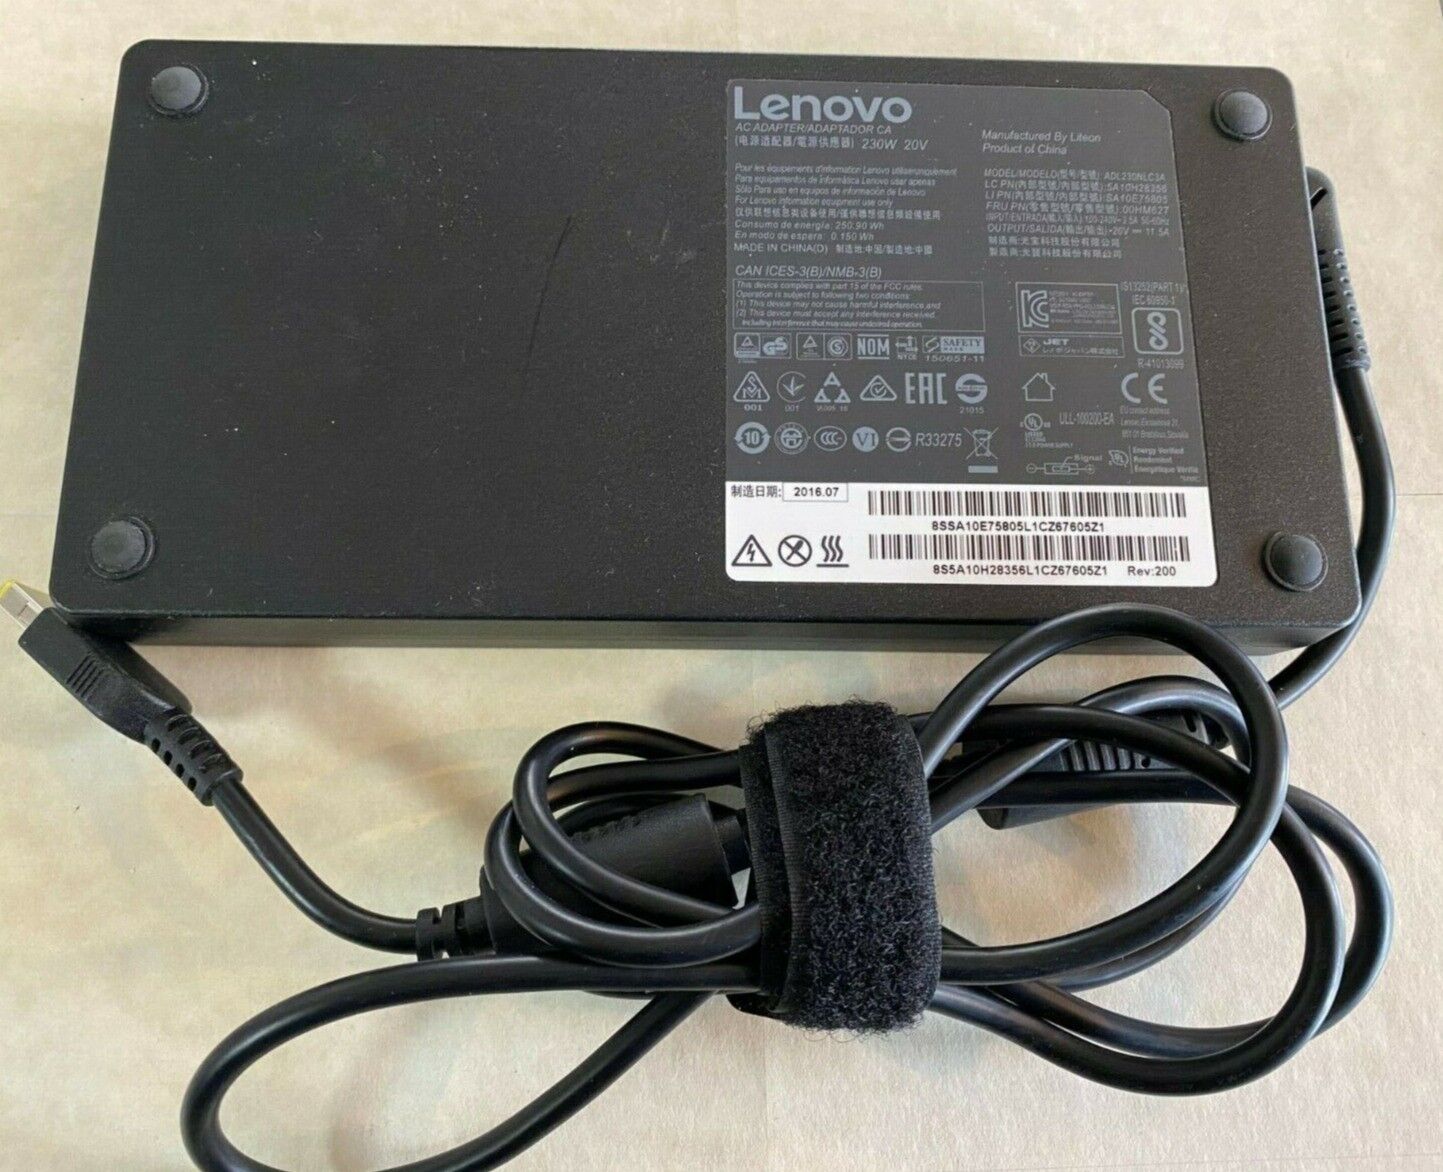 Genuine Lenovo 230W 20V Power AC Adapter ADL230NLC3A for P50 P70 P71, mixed